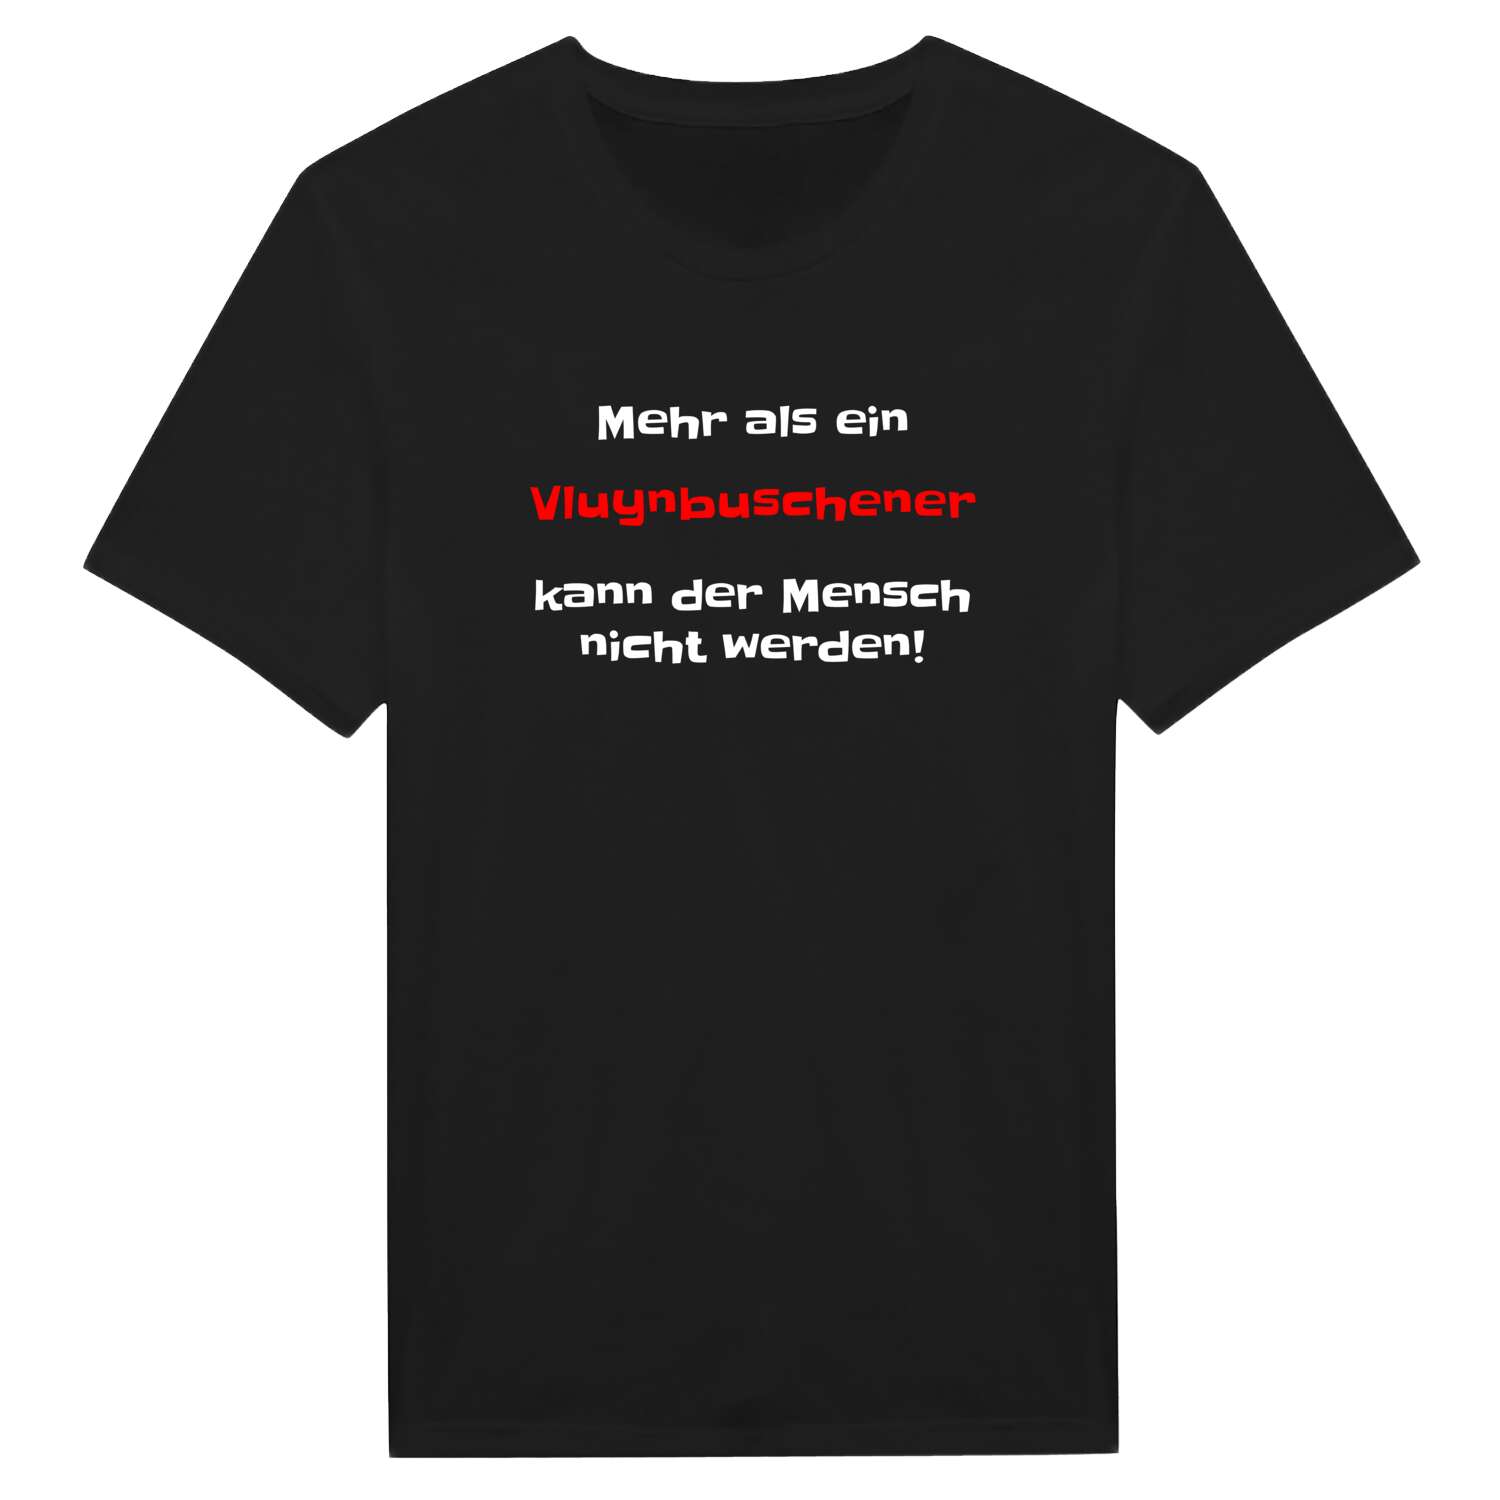 Vluynbusch T-Shirt »Mehr als ein«